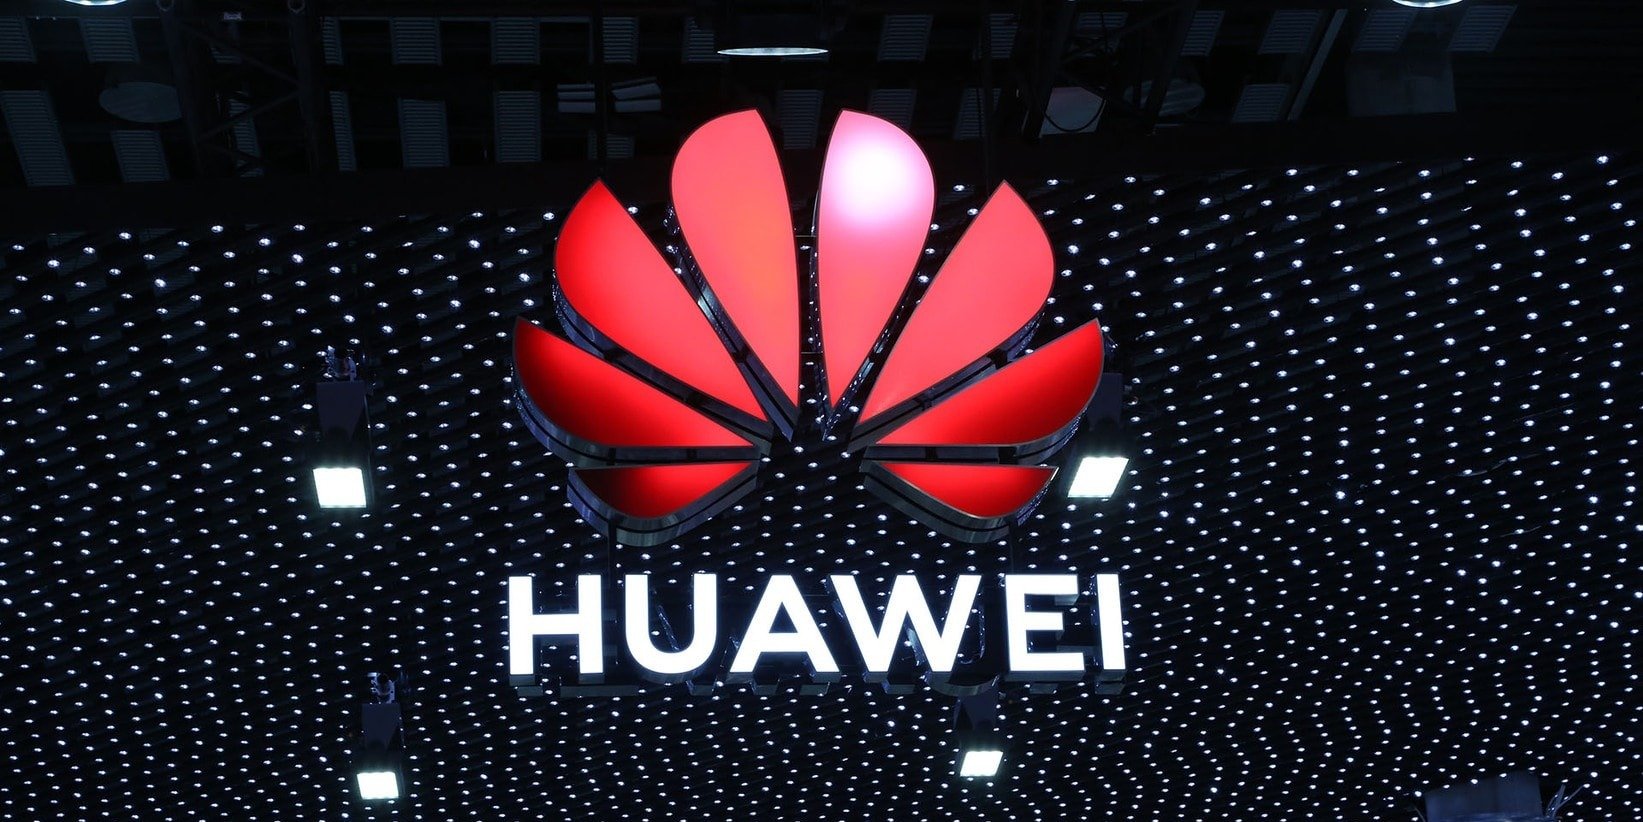 Huawei publikuje pierwszą Białą Księgę na temat podejścia do wyrównywania szans